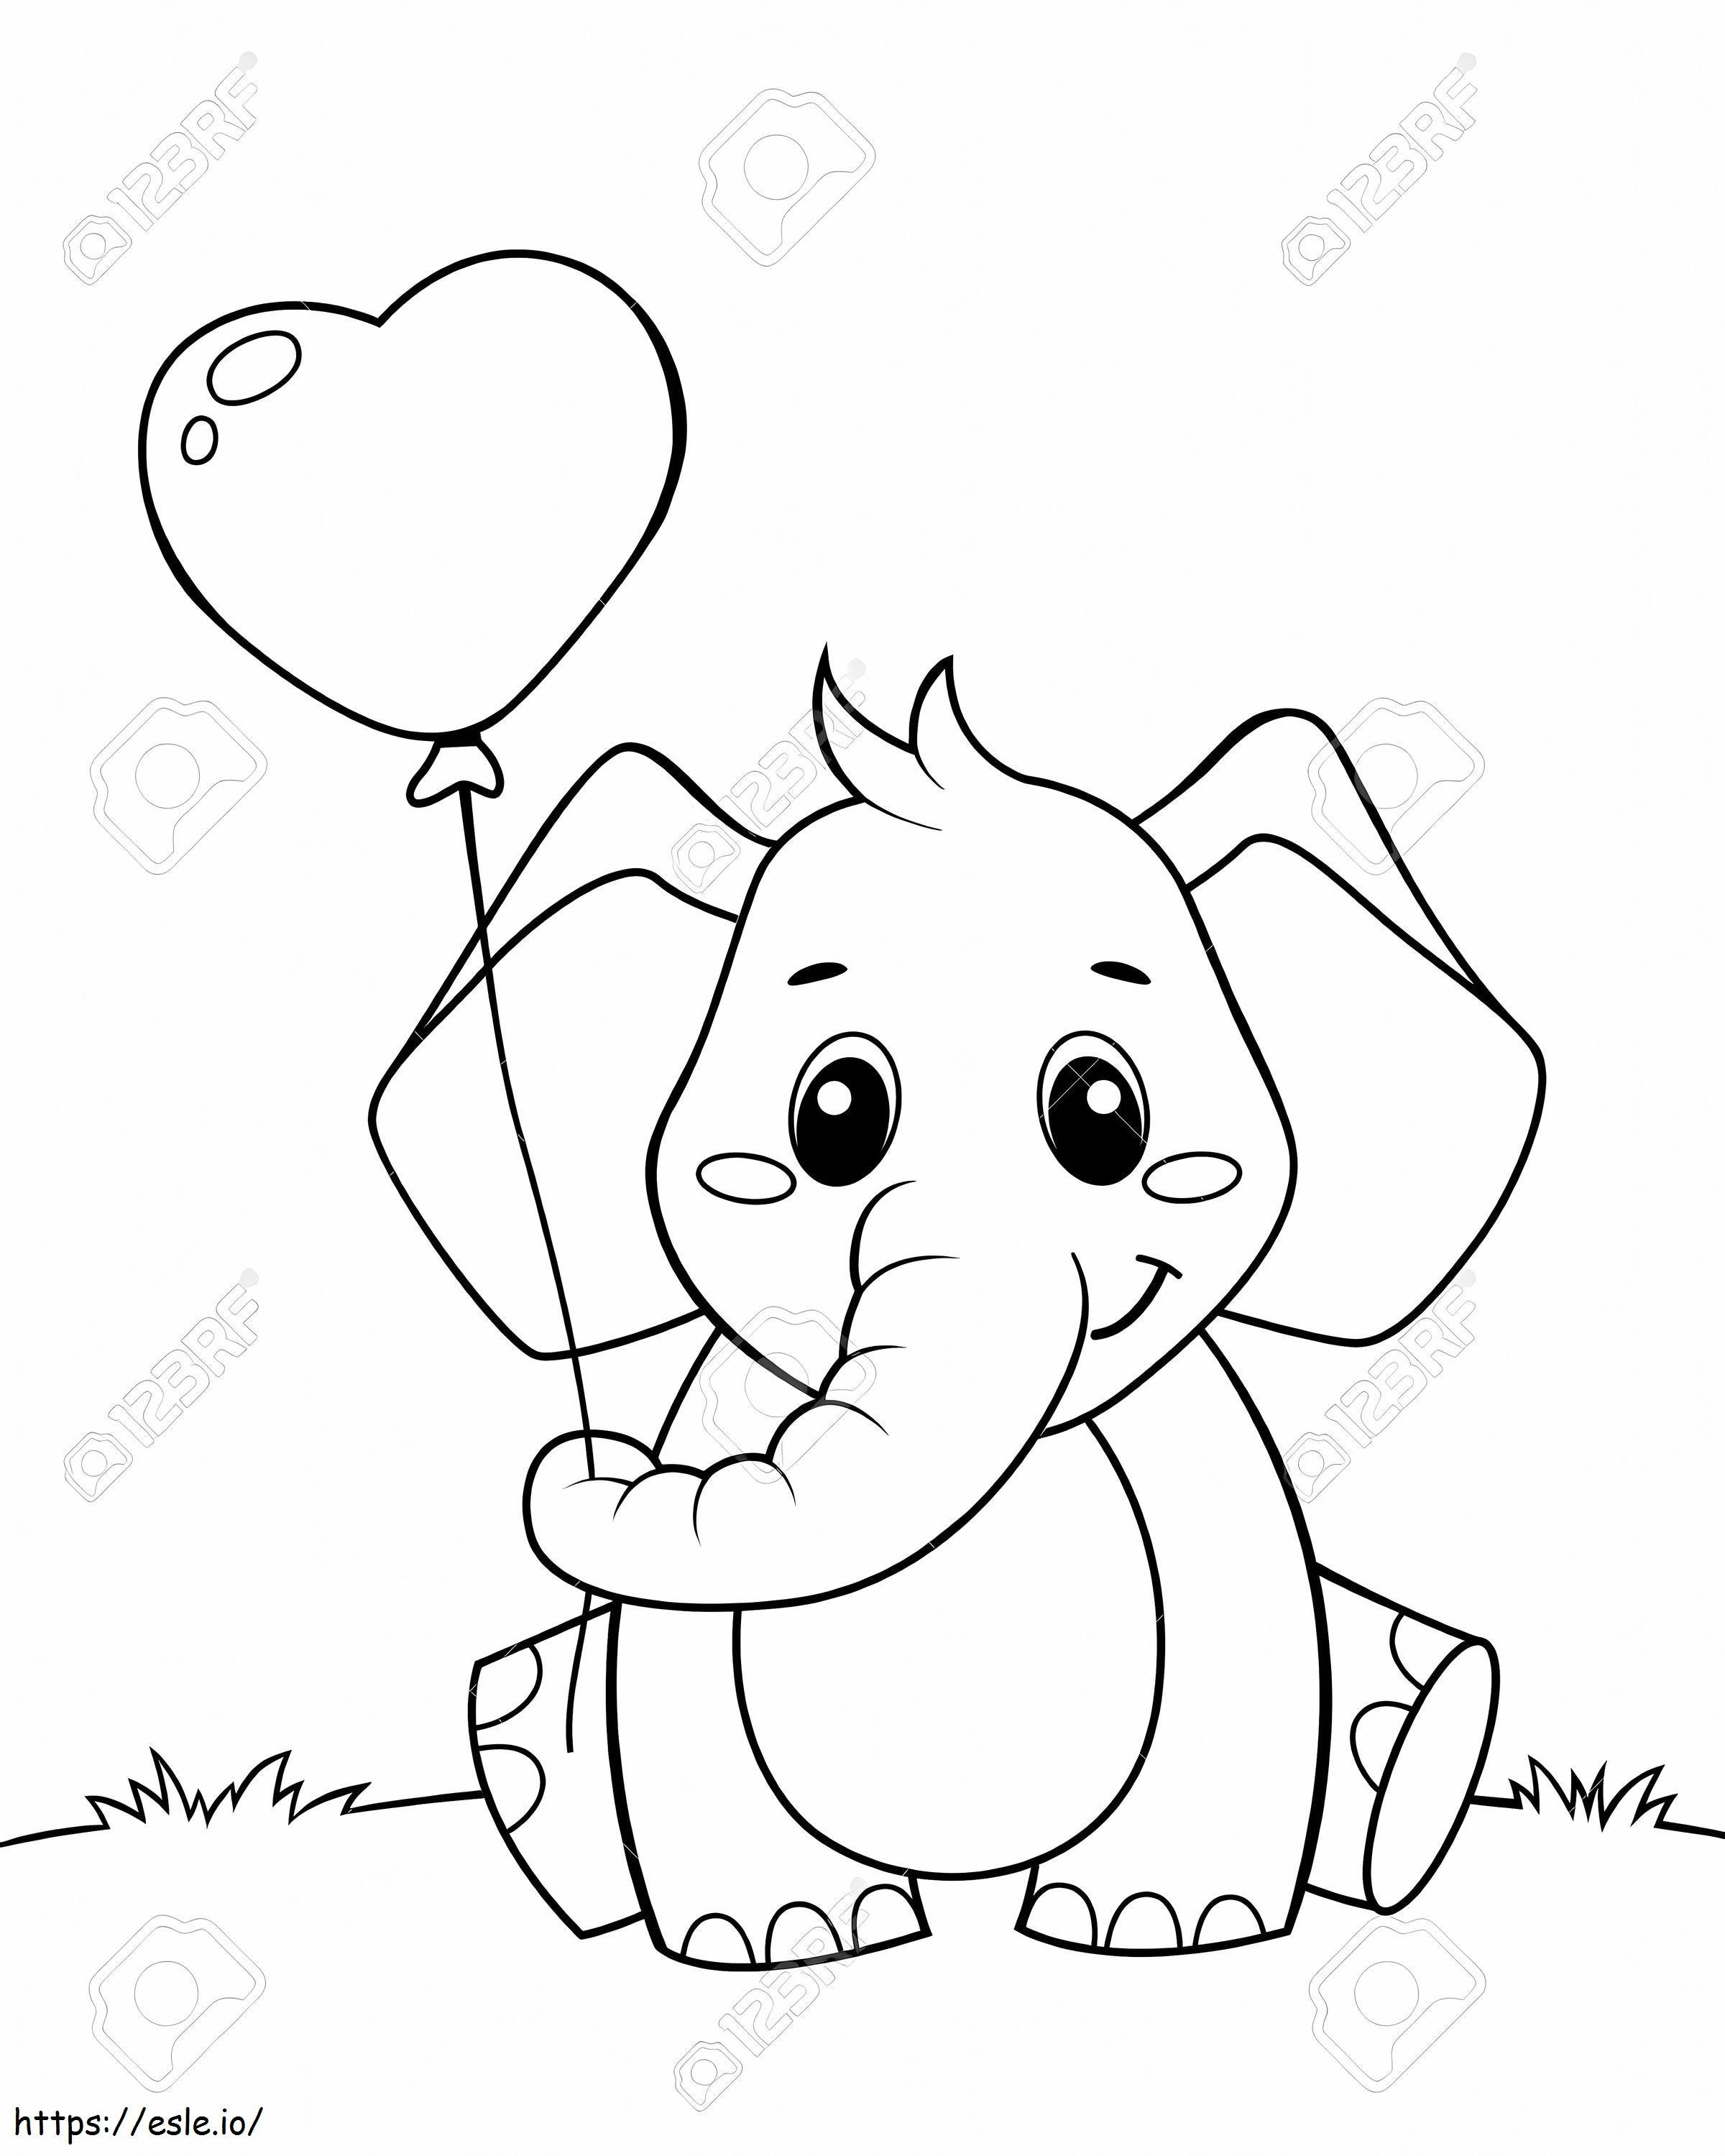  ładny mały słoń trzyma balon w formie serca czarno-biały wektor ilustracja do kolorowania kolorowanka